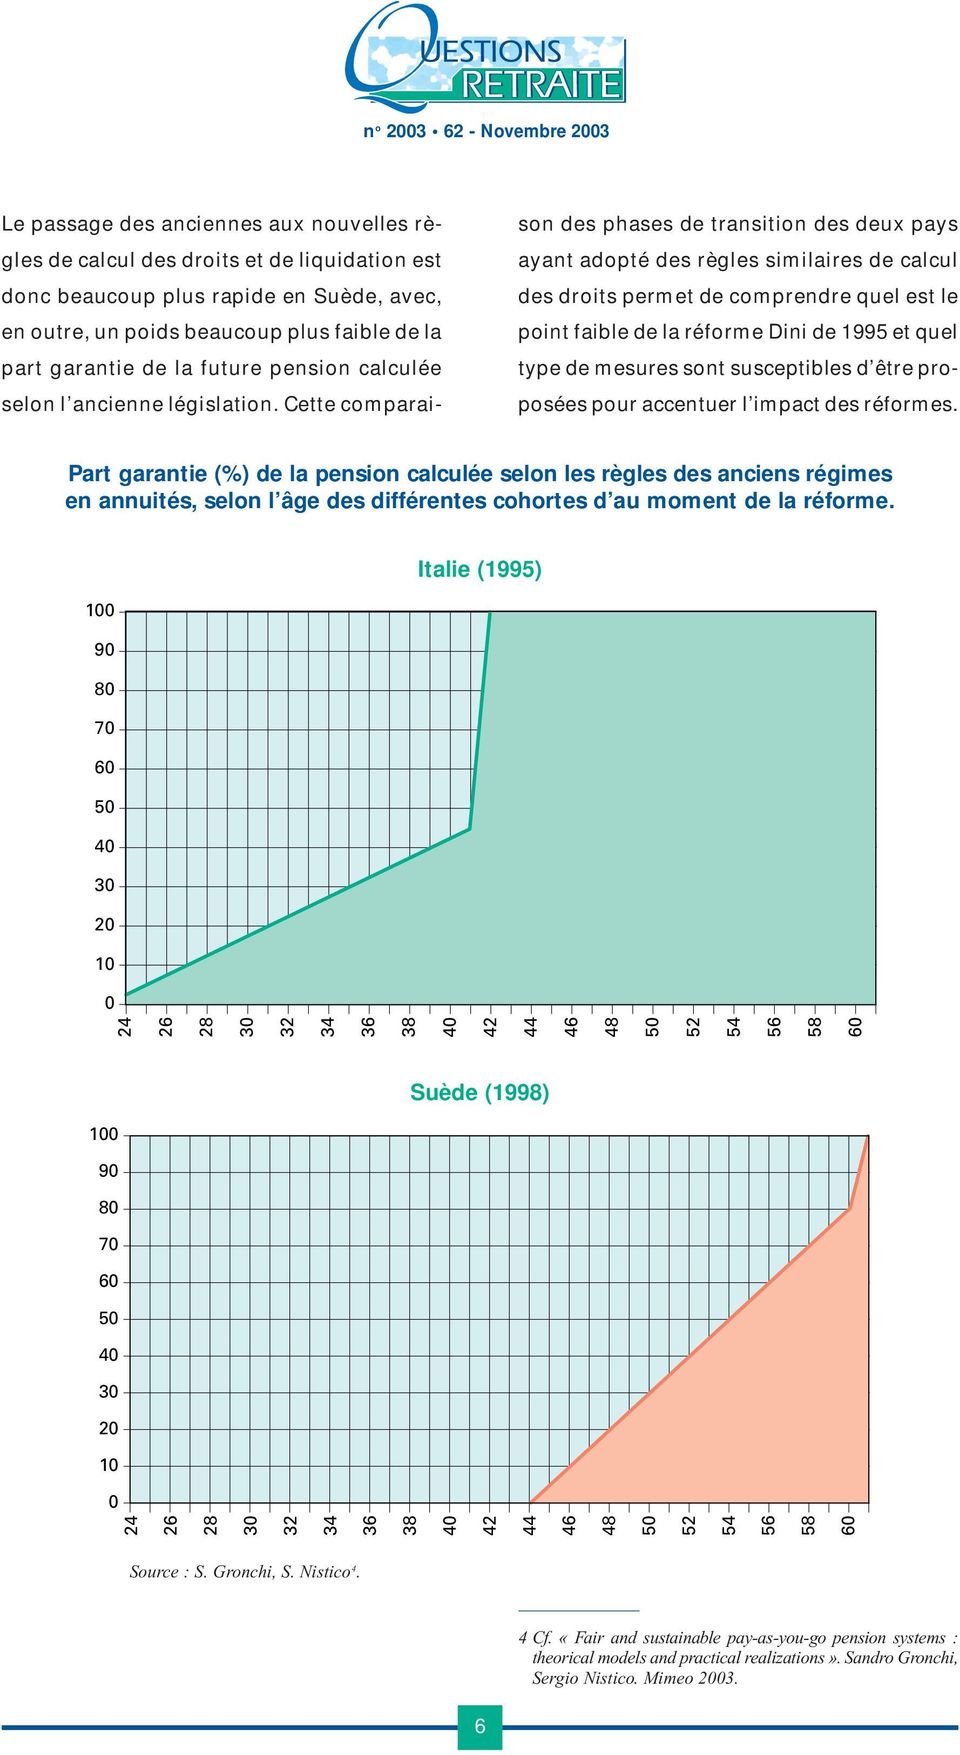 Cette comparaison des phases de transition des deux pays ayant adopté des règles similaires de calcul des droits permet de comprendre quel est le point faible de la réforme Dini de 1995 et quel type